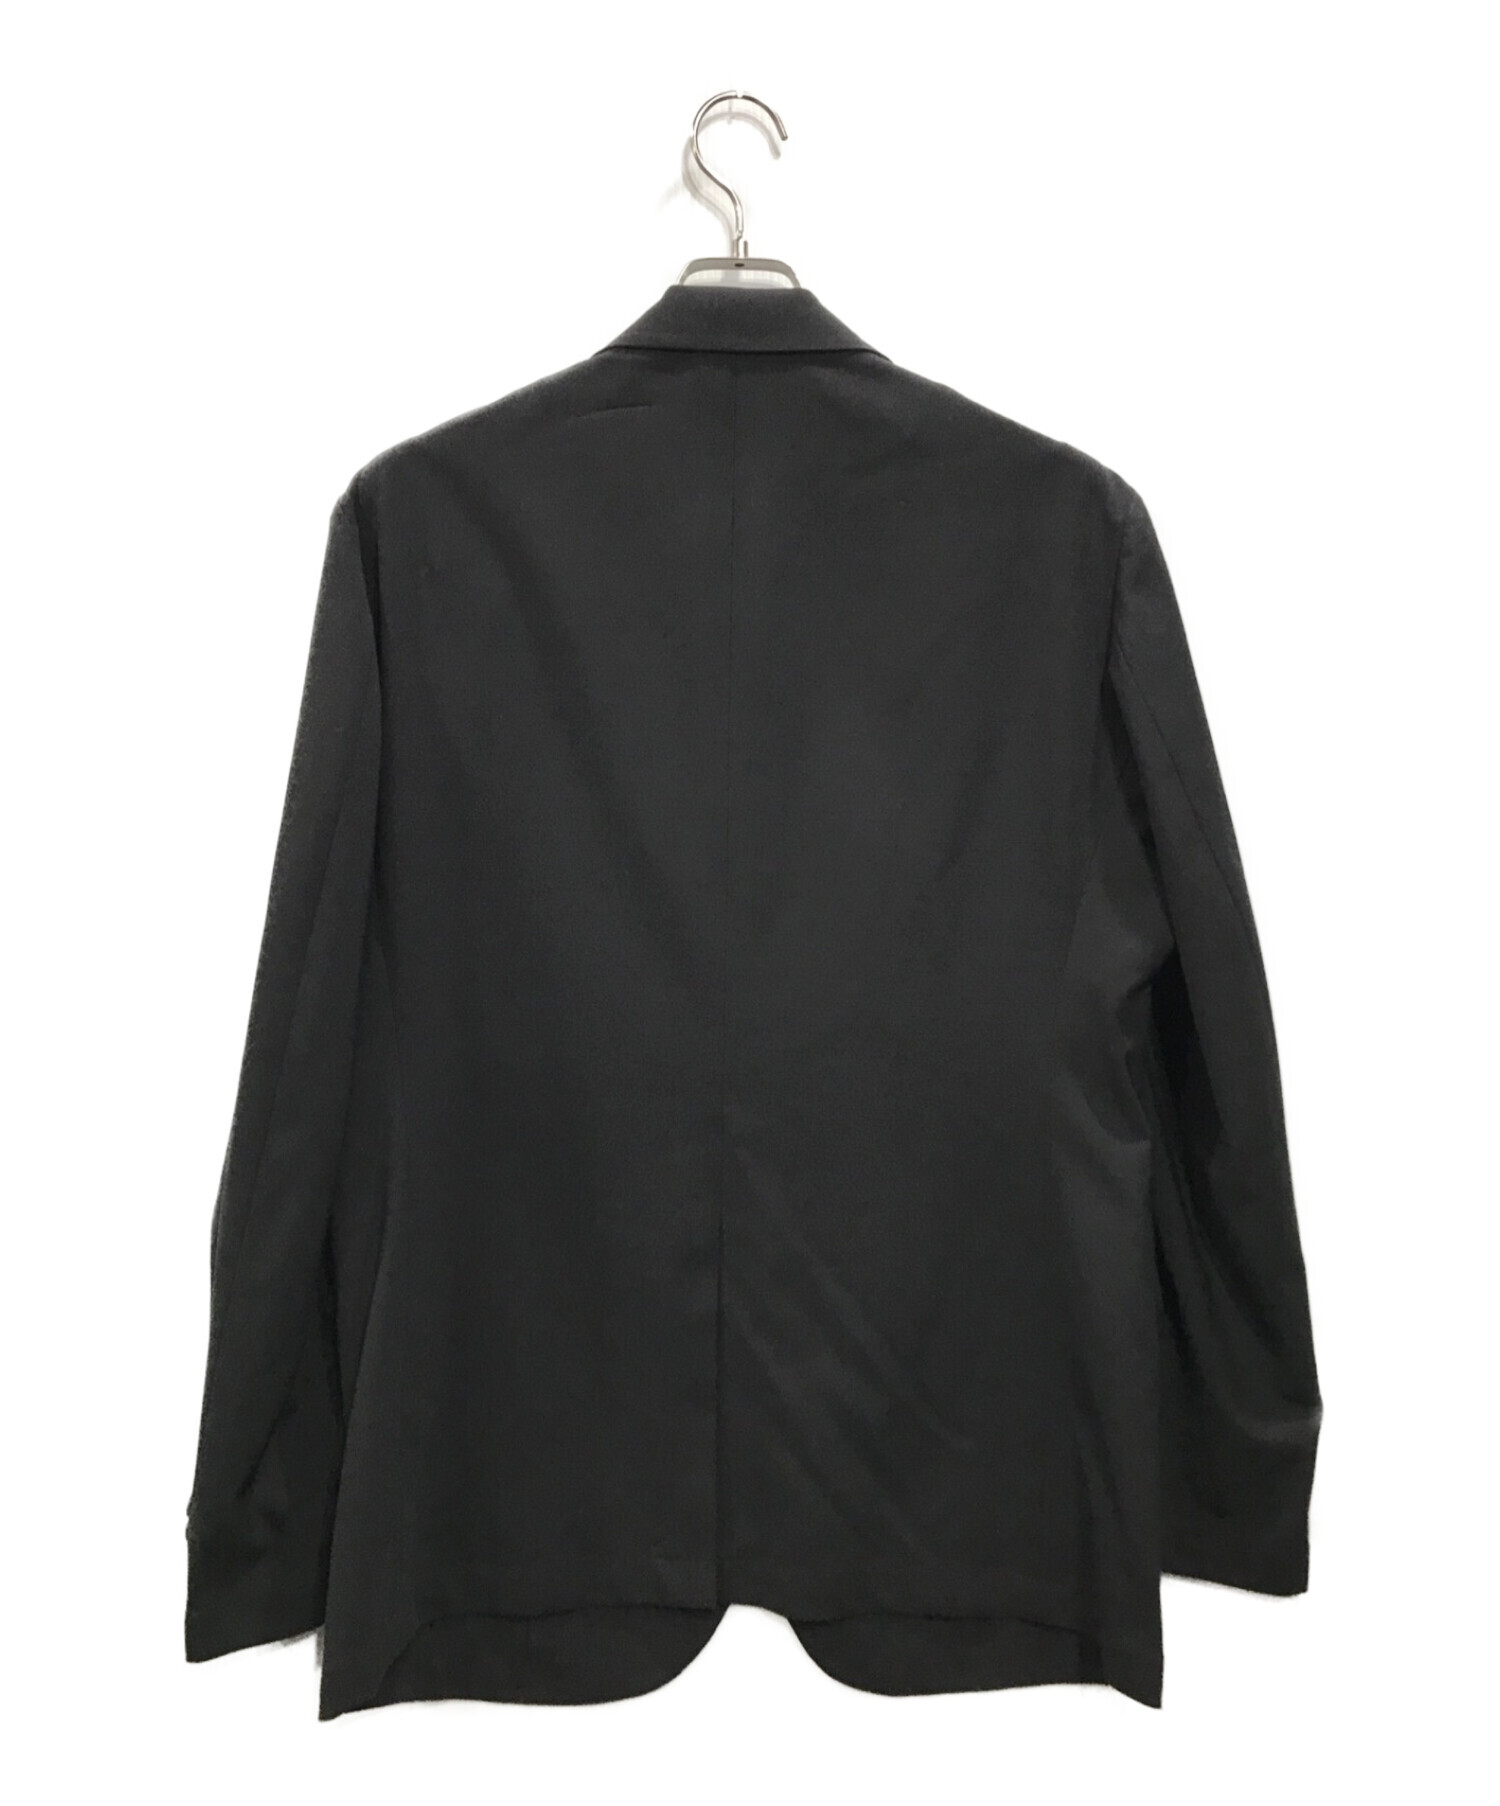 MAISON SPECIAL (メゾンスペシャル) セットアップスーツ ブラック サイズ:48